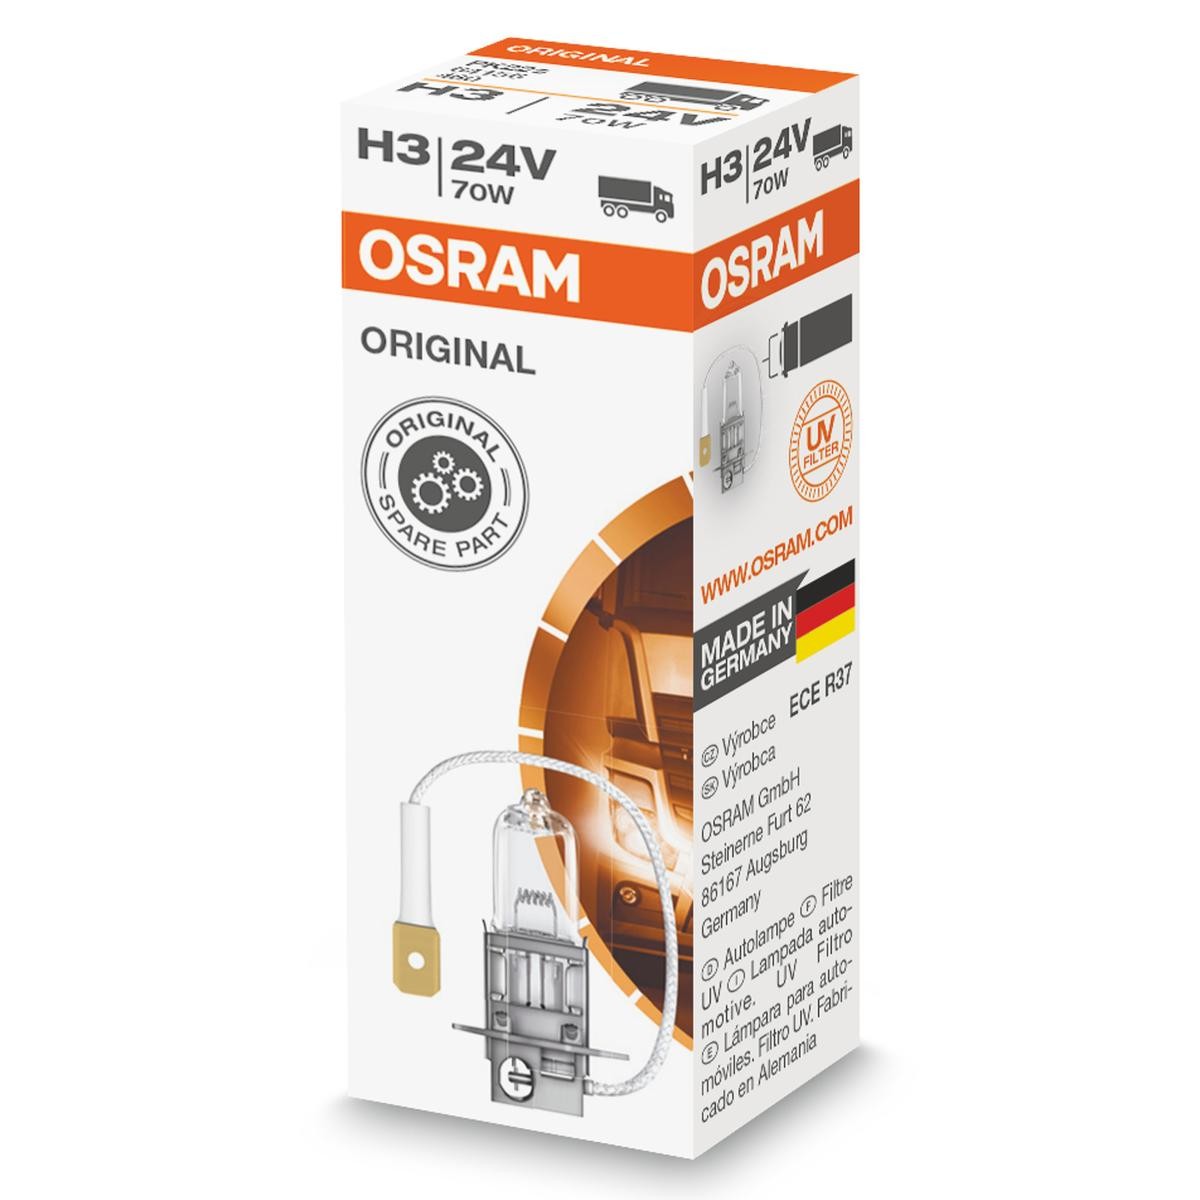 Comprare H3 OSRAM ORIGINAL H3 24V 70W3200K Alogeno Lampadina, faro di profondità 64156 poco costoso